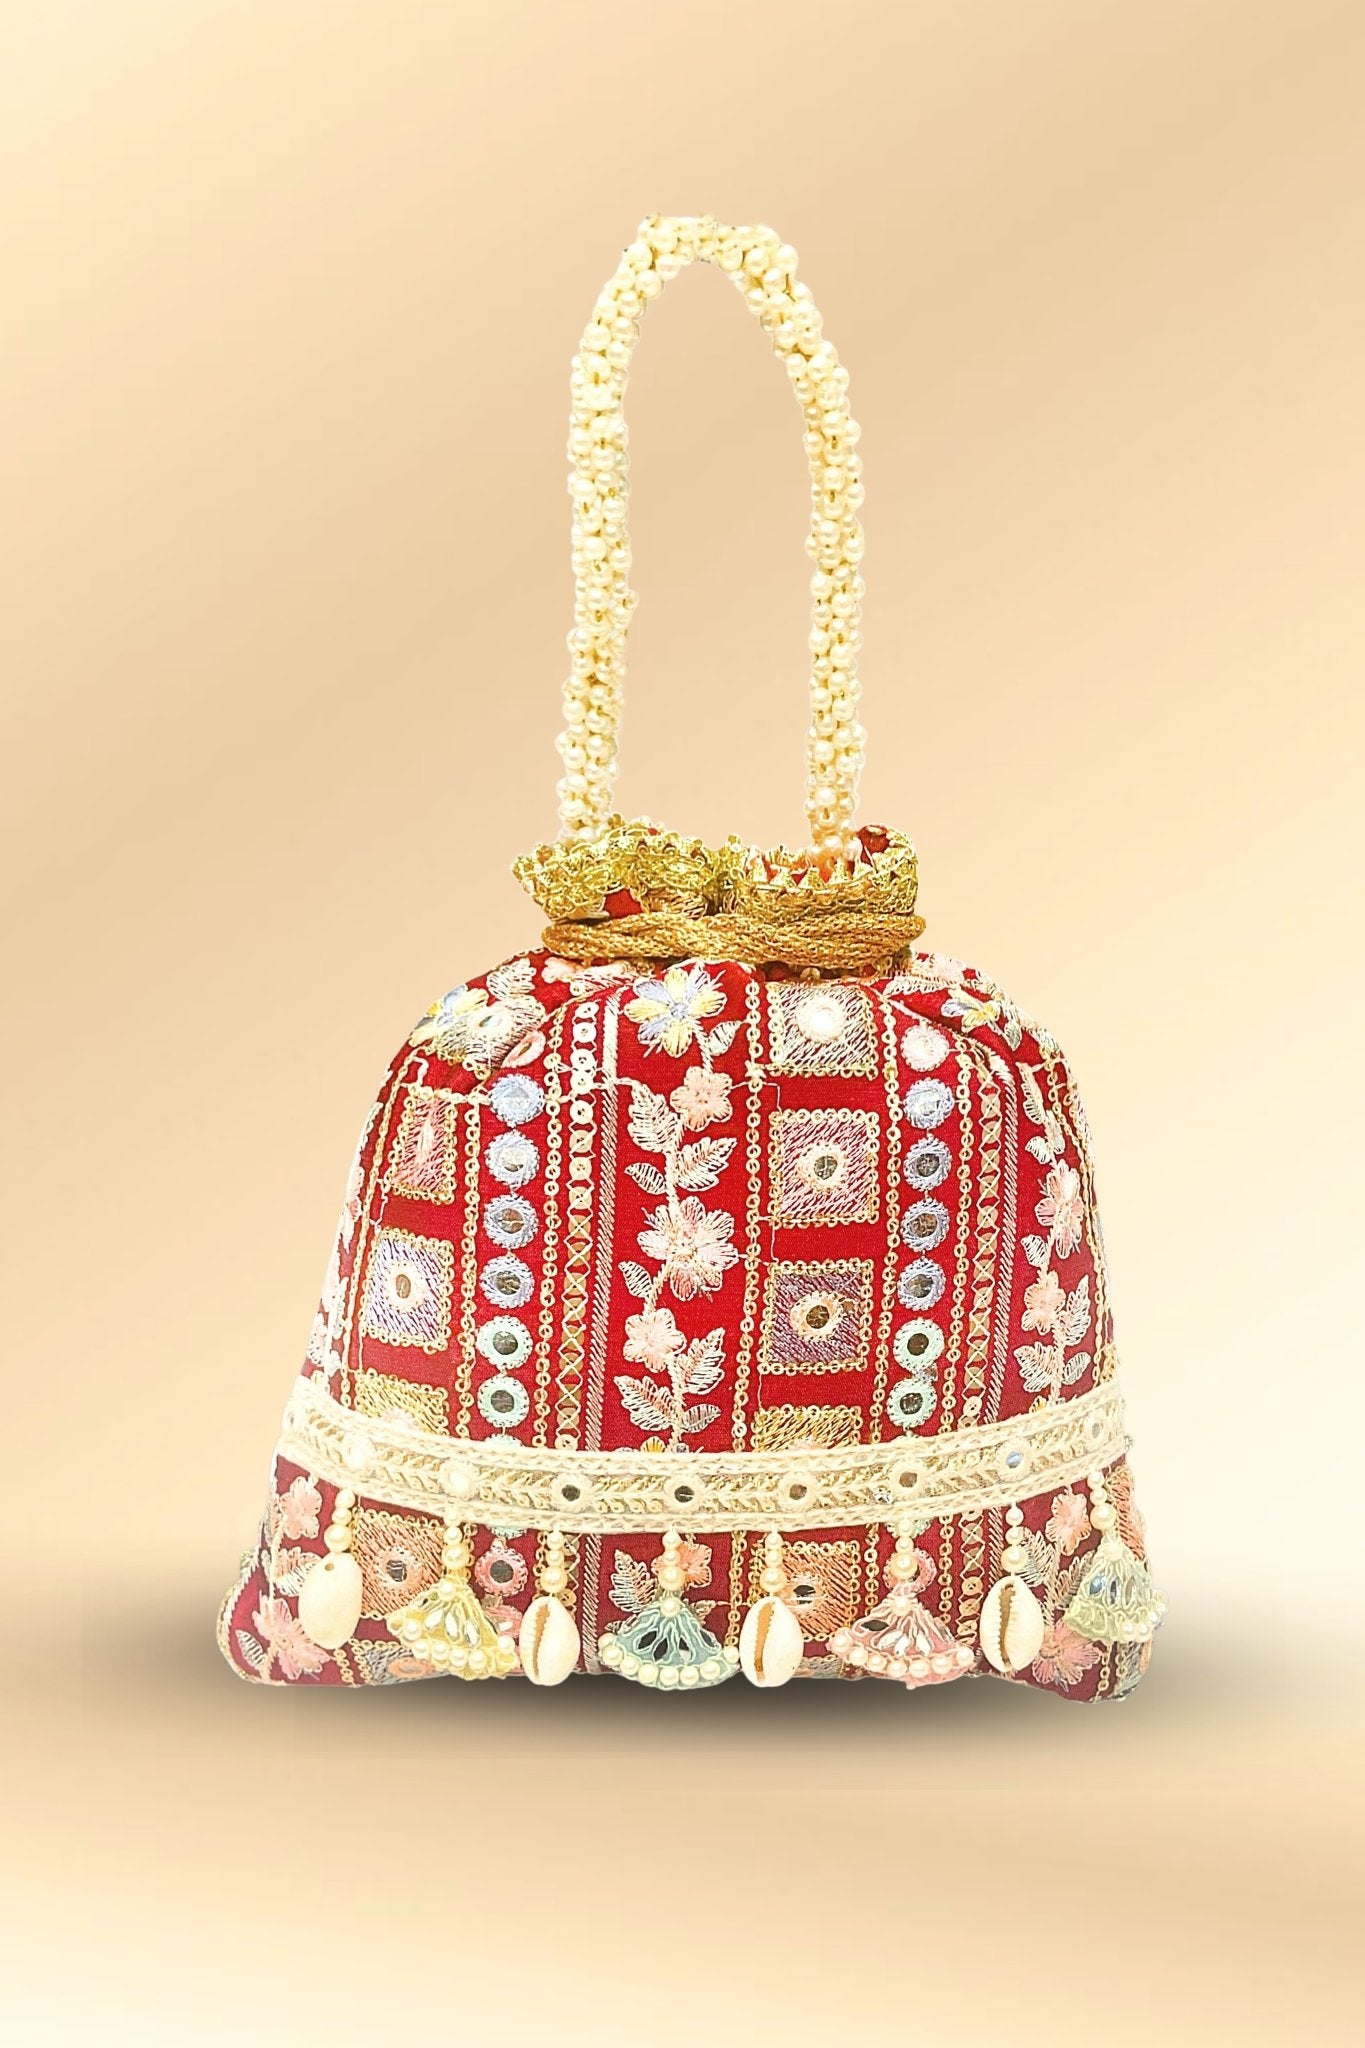 Radhika Merchant's expensive bag collection